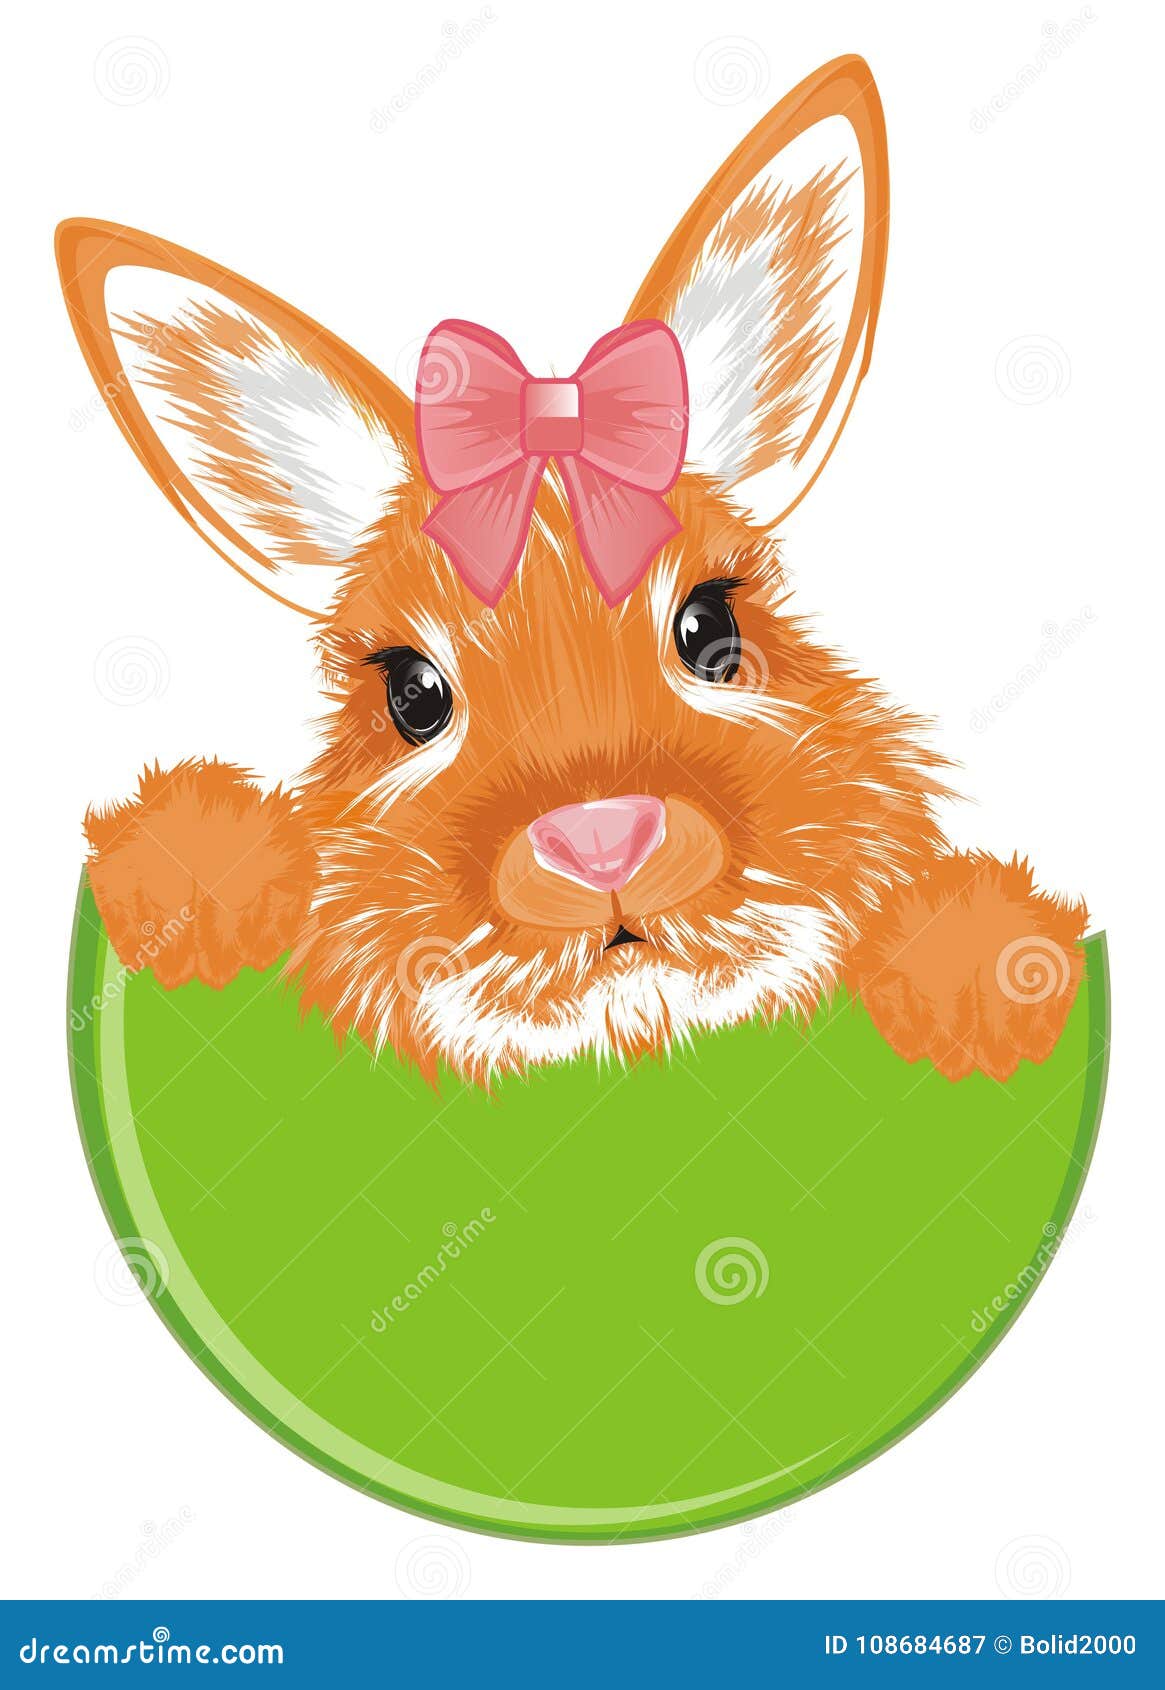 可爱小兔壁纸_动物_太平洋科技